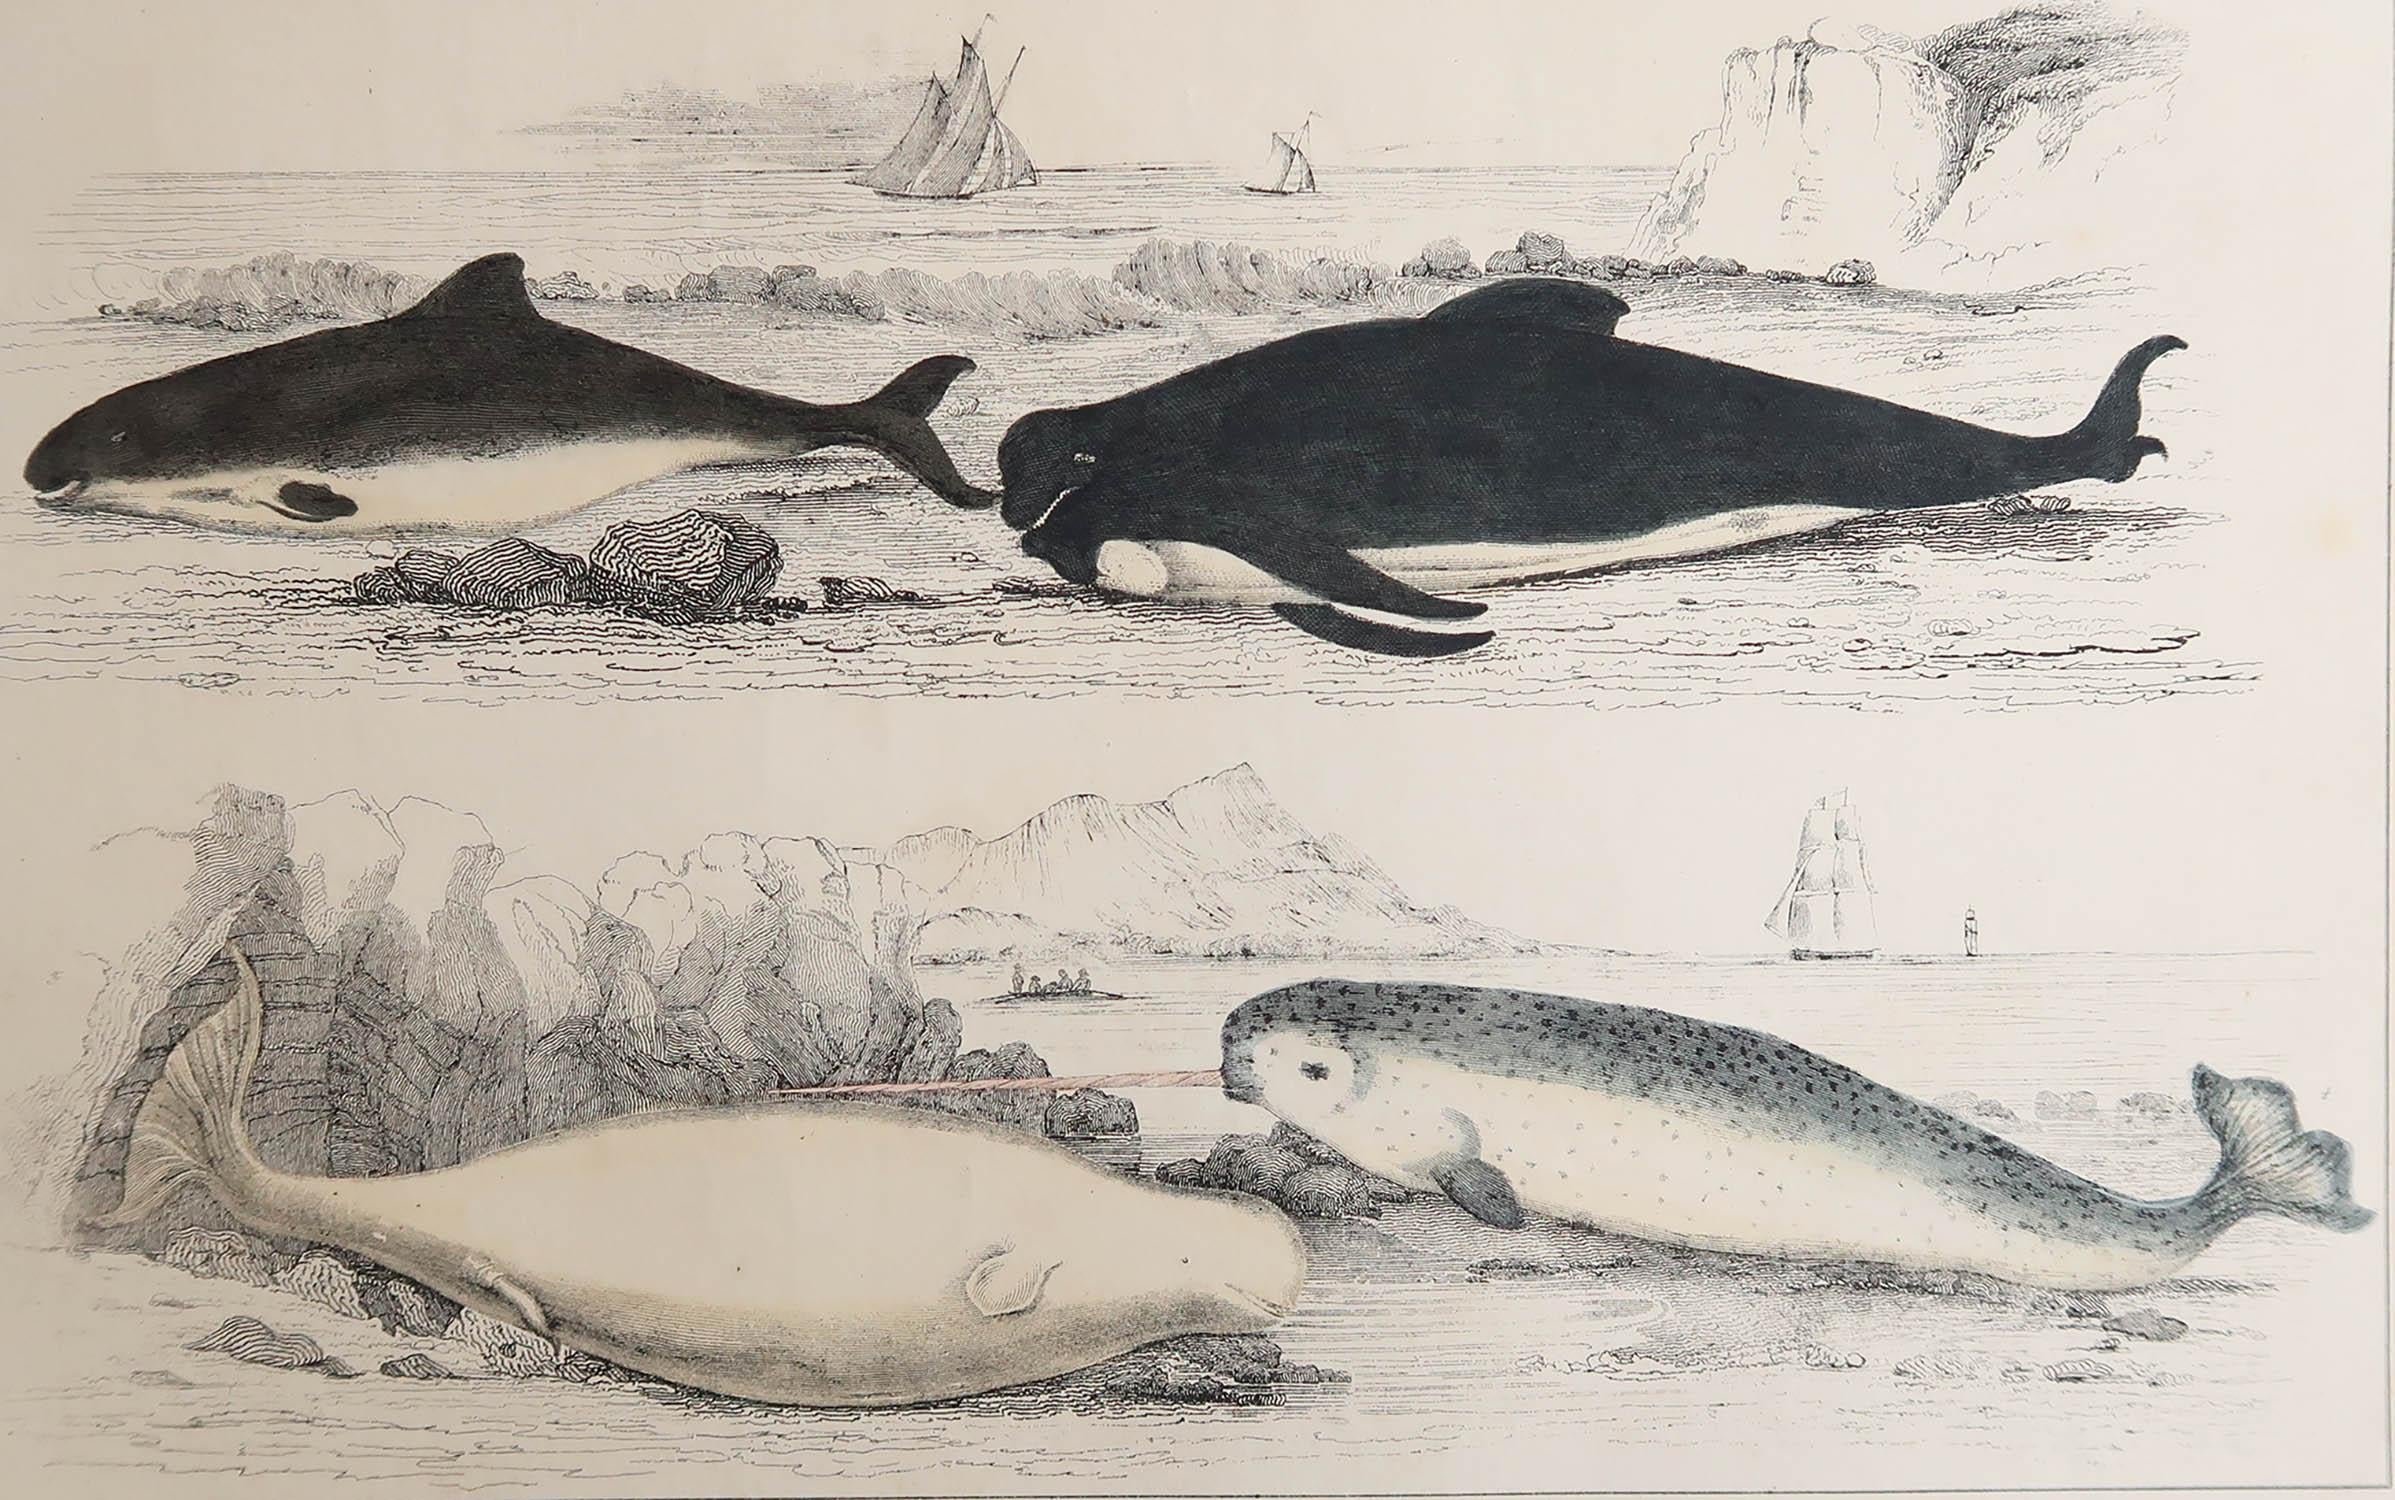 Tolles Bild von Delfinen.

Ungerahmt. So haben Sie die Möglichkeit, Ihre eigene Auswahl an Rahmen zu treffen.

Lithographie nach Cpt. Braun mit Original-Handkolorit.

Veröffentlicht, 1847.

Kostenloser Versand.






